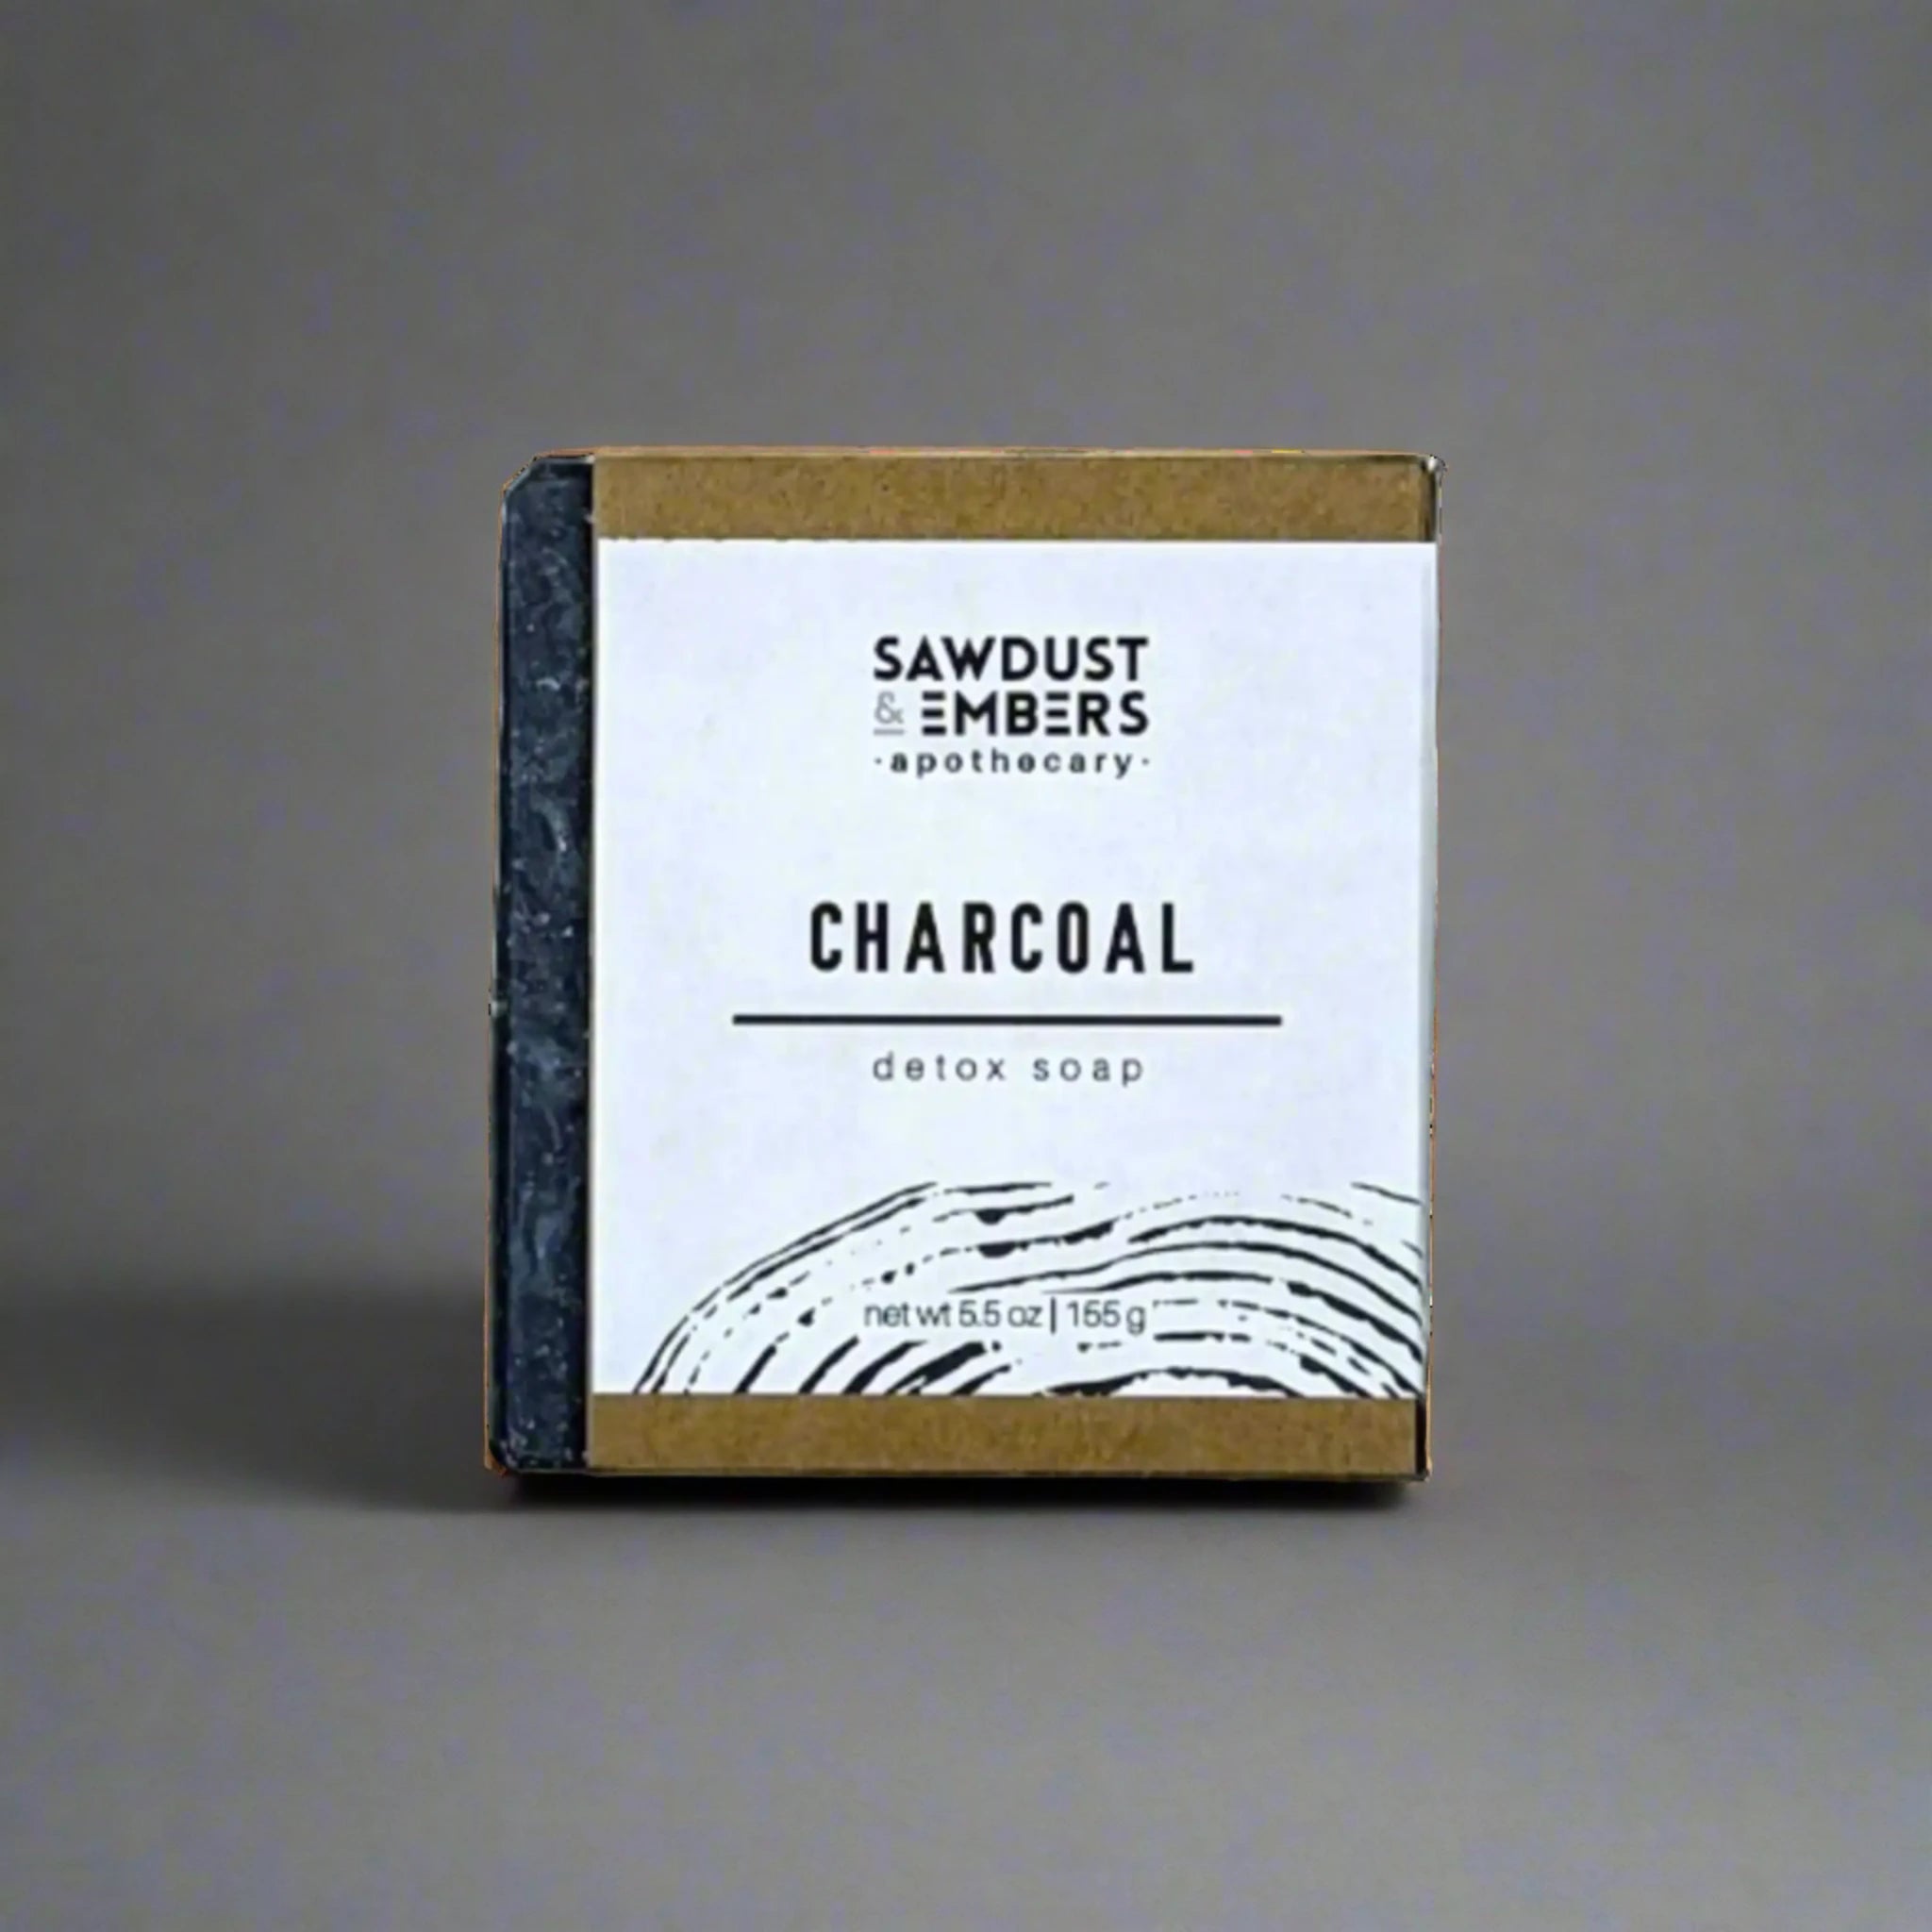 Charcoal - Detox Soap